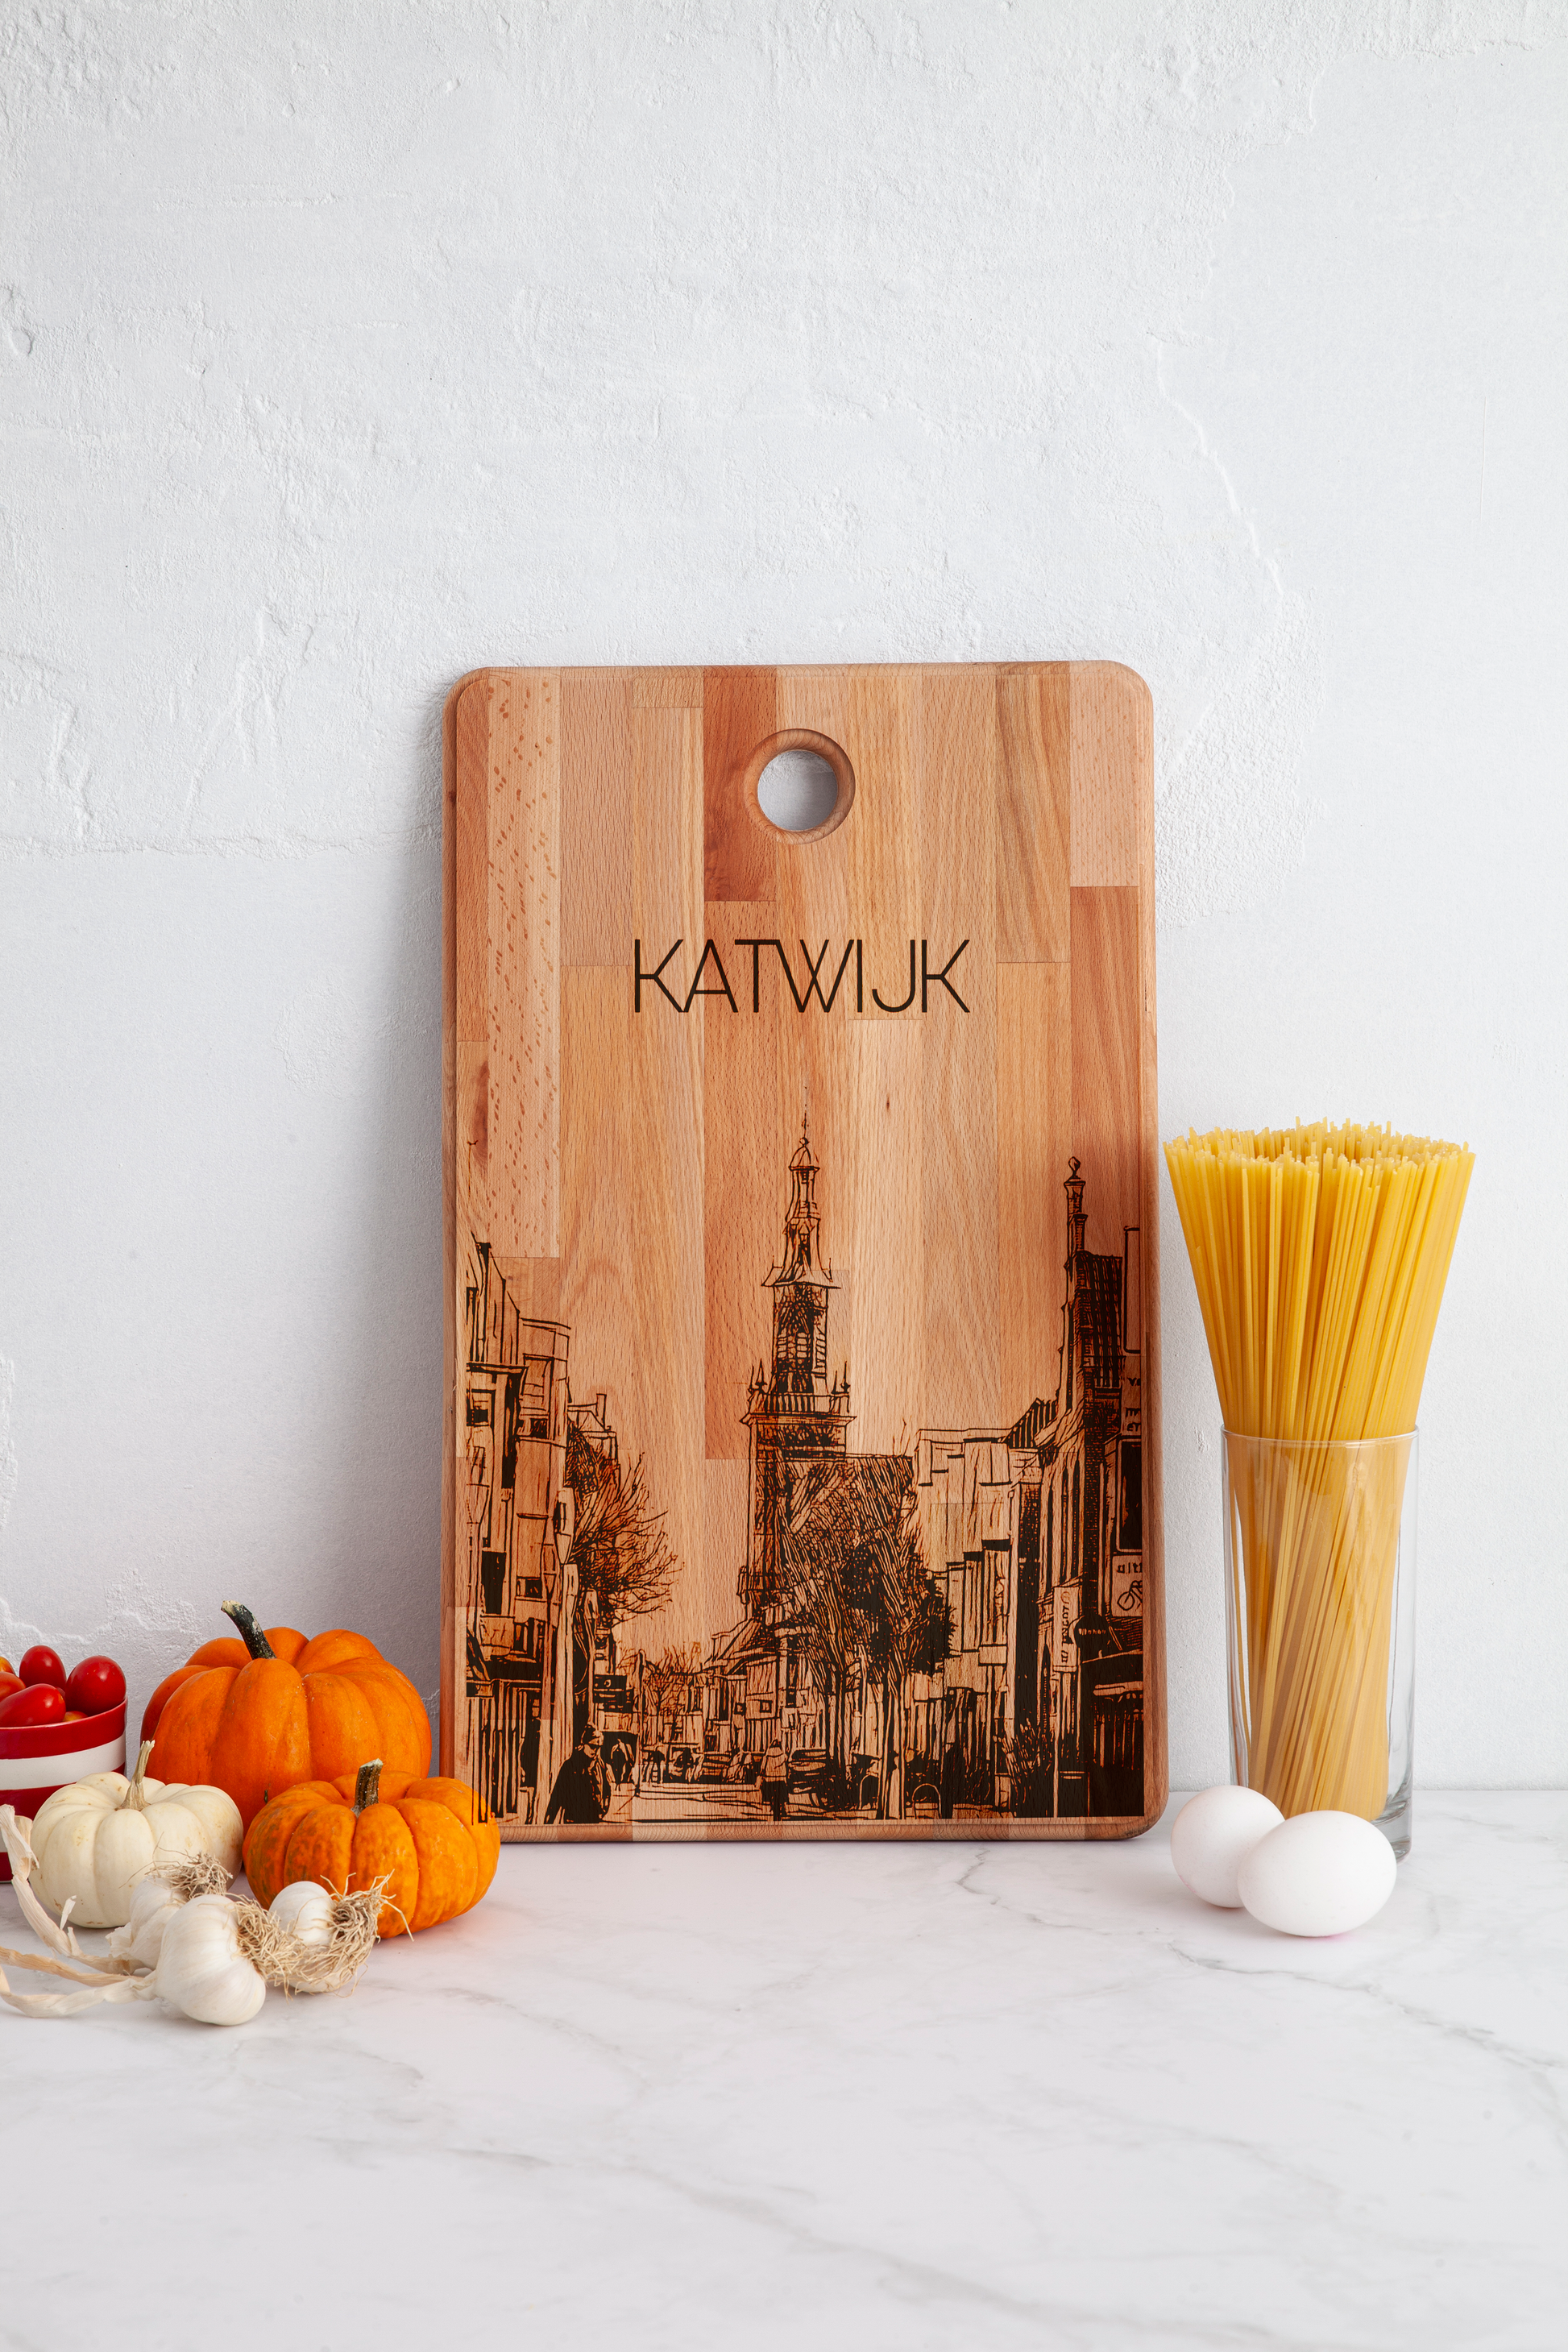 Katwijk, Niuewe Kerk, cutting board, in kitchen